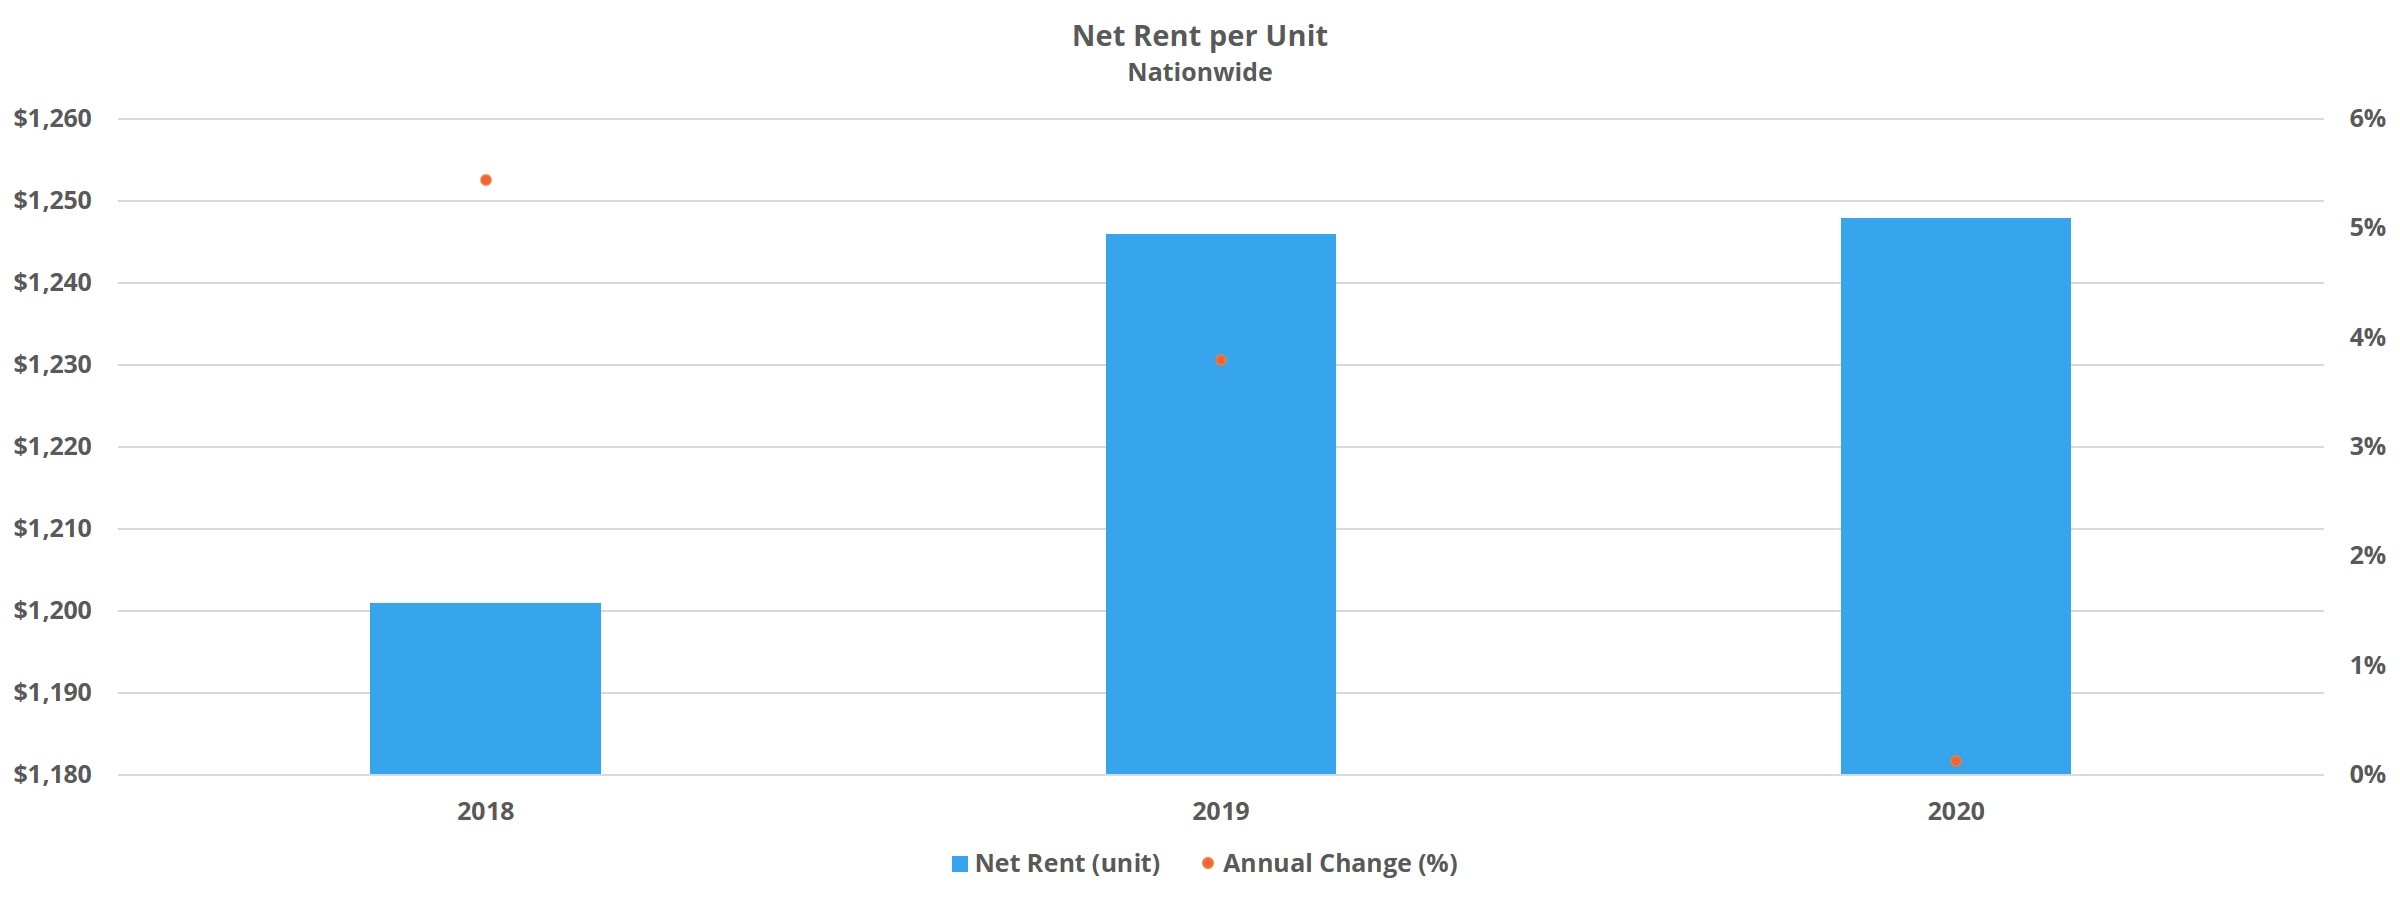 Net Rent per Unit